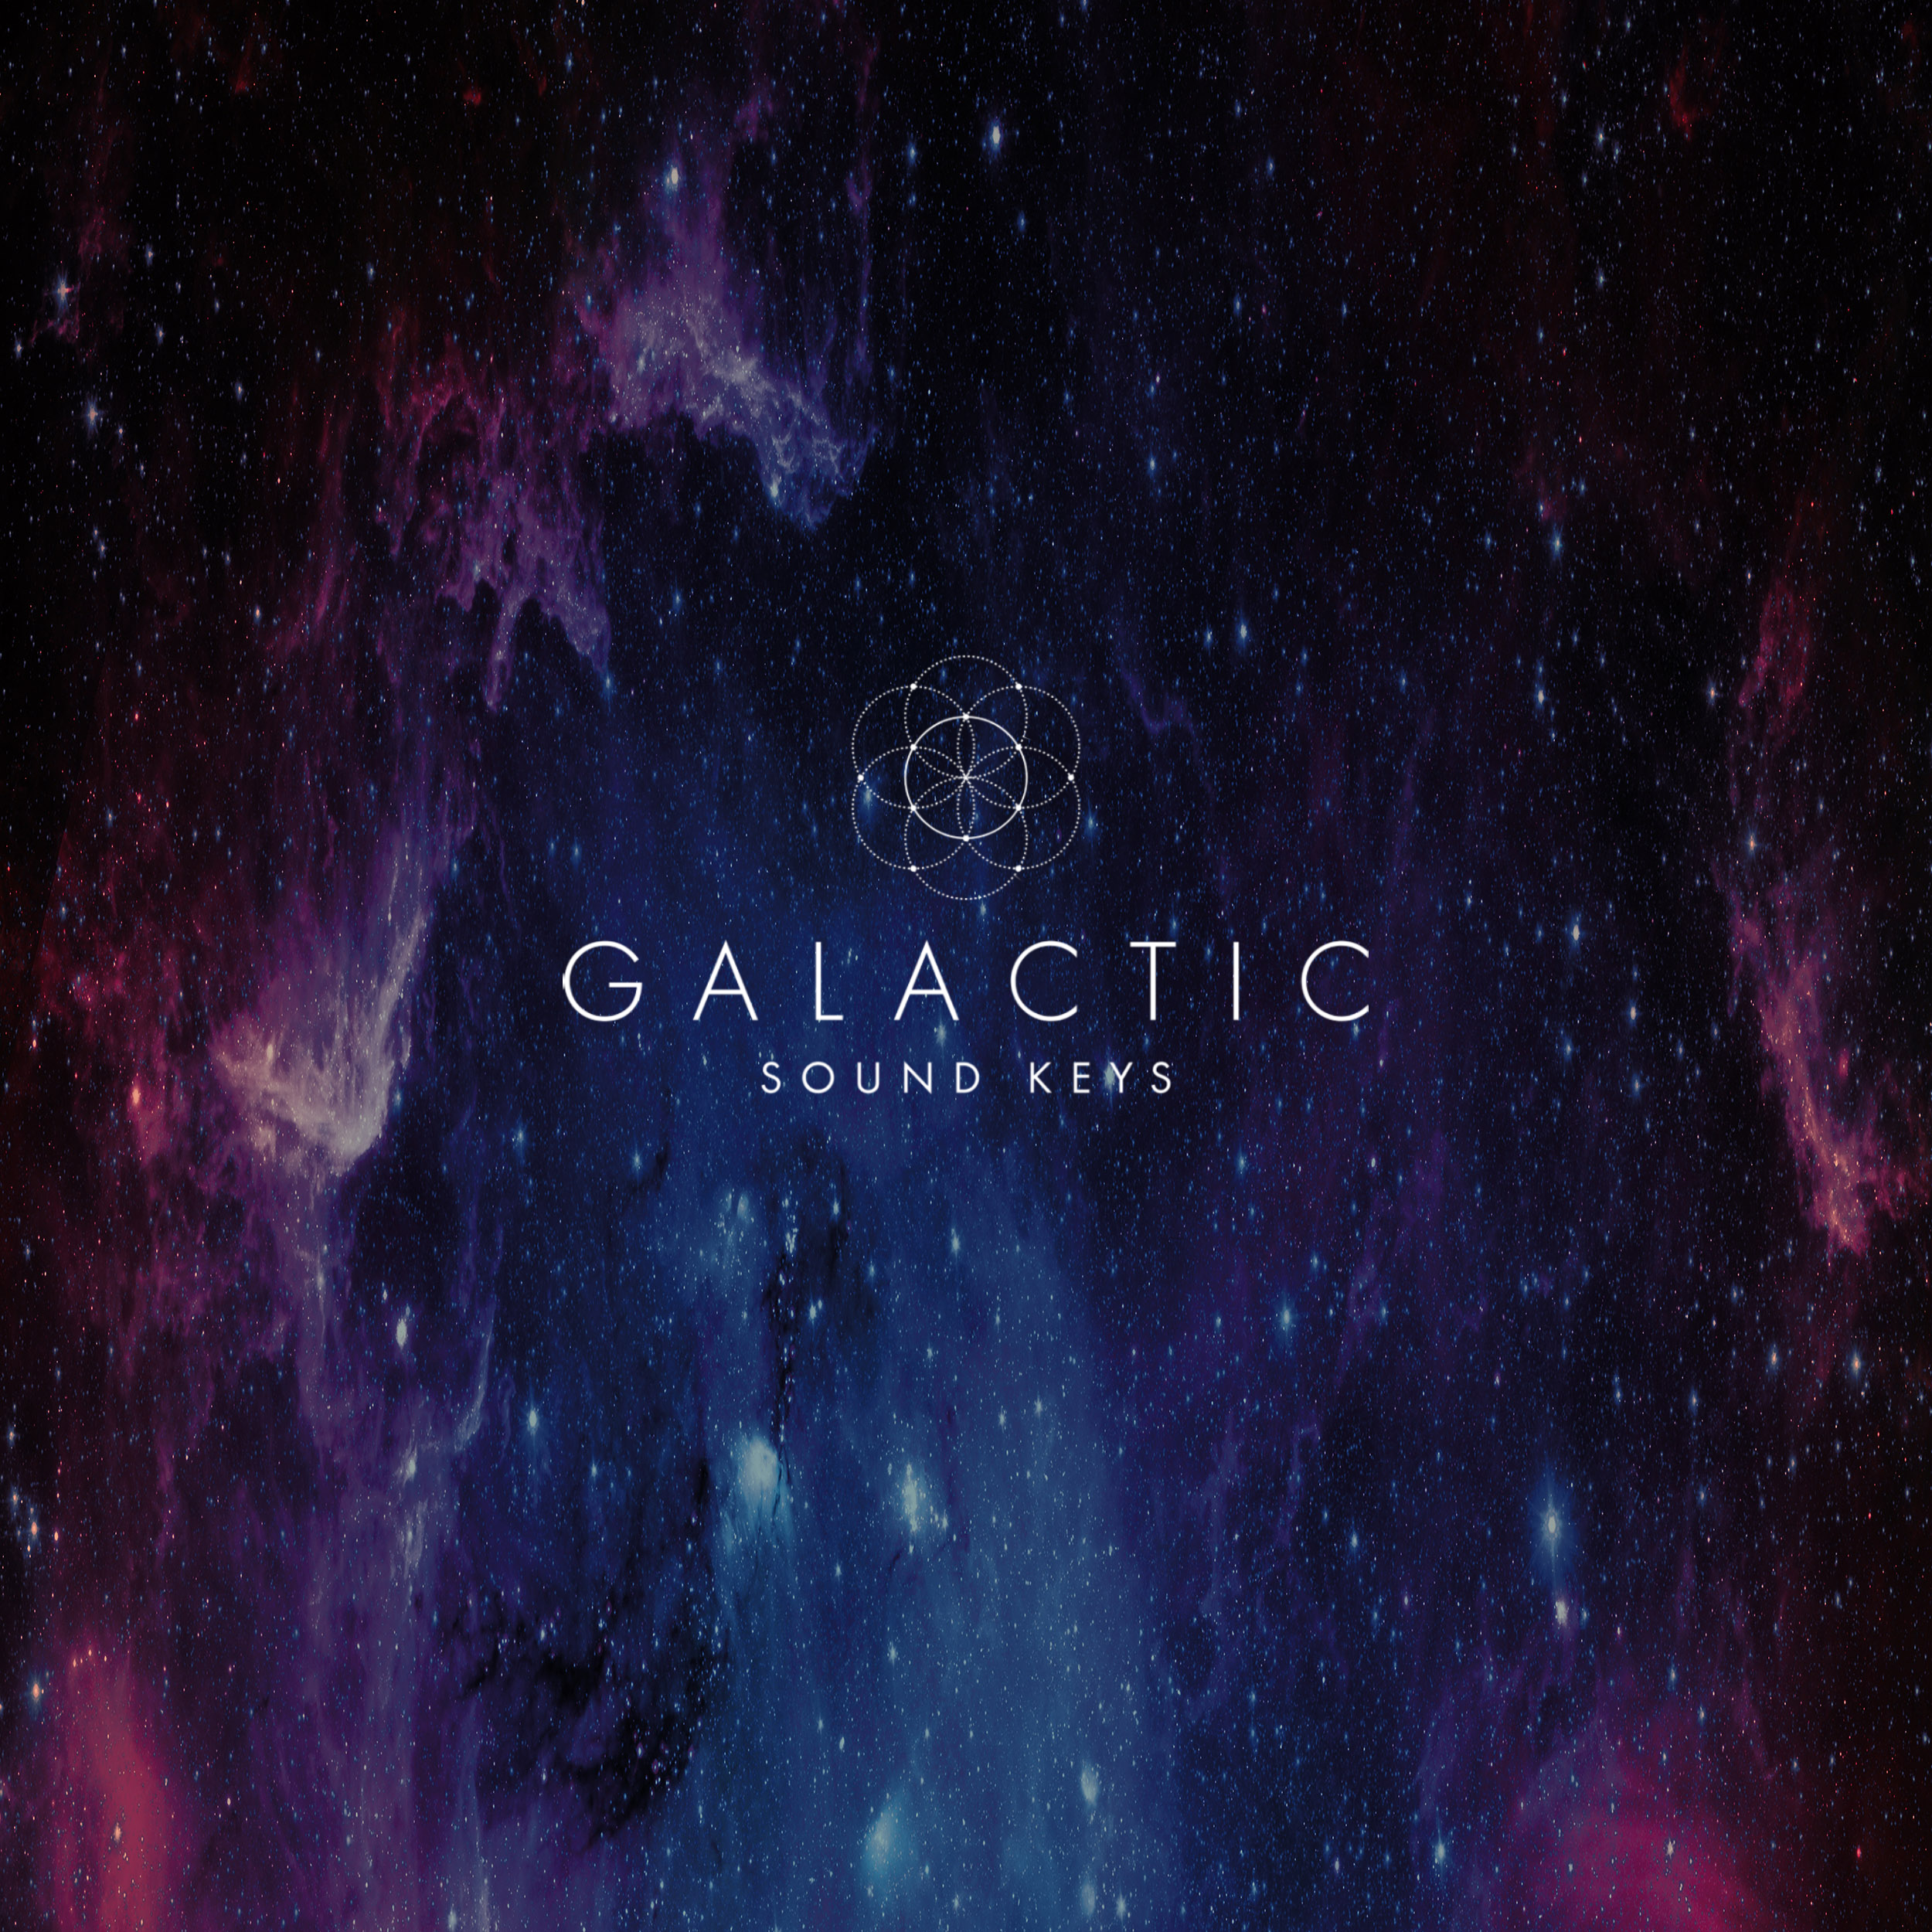 Galactic Sound Keys âm nhạc sẽ đưa bạn vào một không gian tuyệt đẹp, nơi âm nhạc và màu sắc được kết hợp tuyệt vời. Hãy lắng nghe và tận hưởng nhịp đập của vũ trụ bằng hình ảnh liên quan đến chủ đề này.